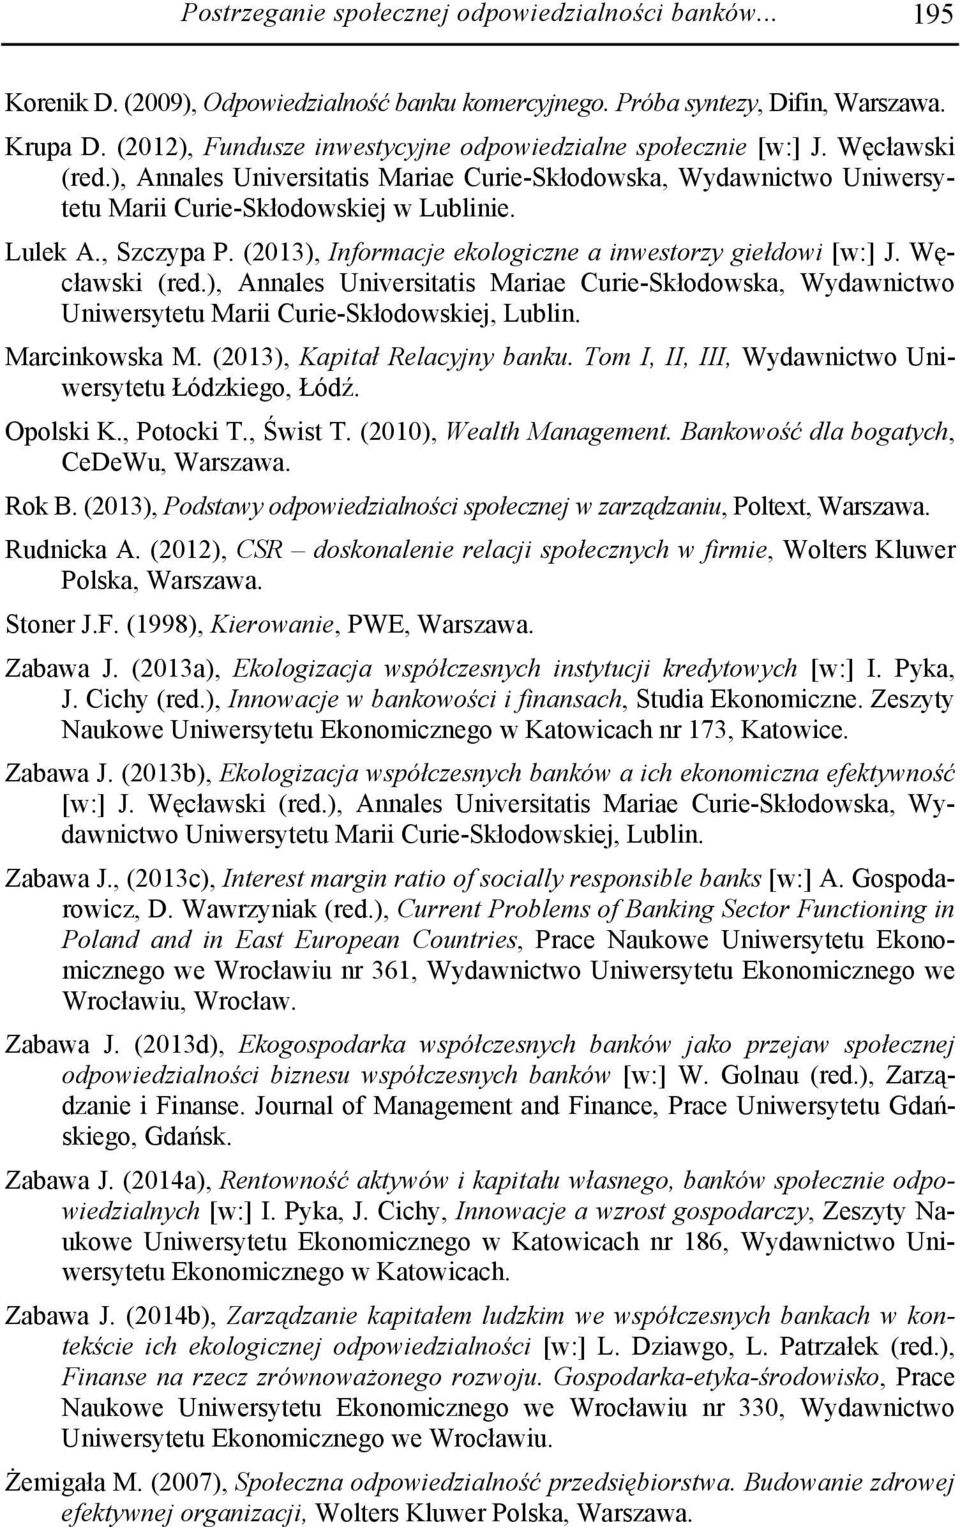 , Szczypa P. (2013), Informacje ekologiczne a inwestorzy giełdowi [w:] J. Węcławski (red.), Annales Universitatis Mariae Curie-Skłodowska, Wydawnictwo Uniwersytetu Marii Curie-Skłodowskiej, Lublin.